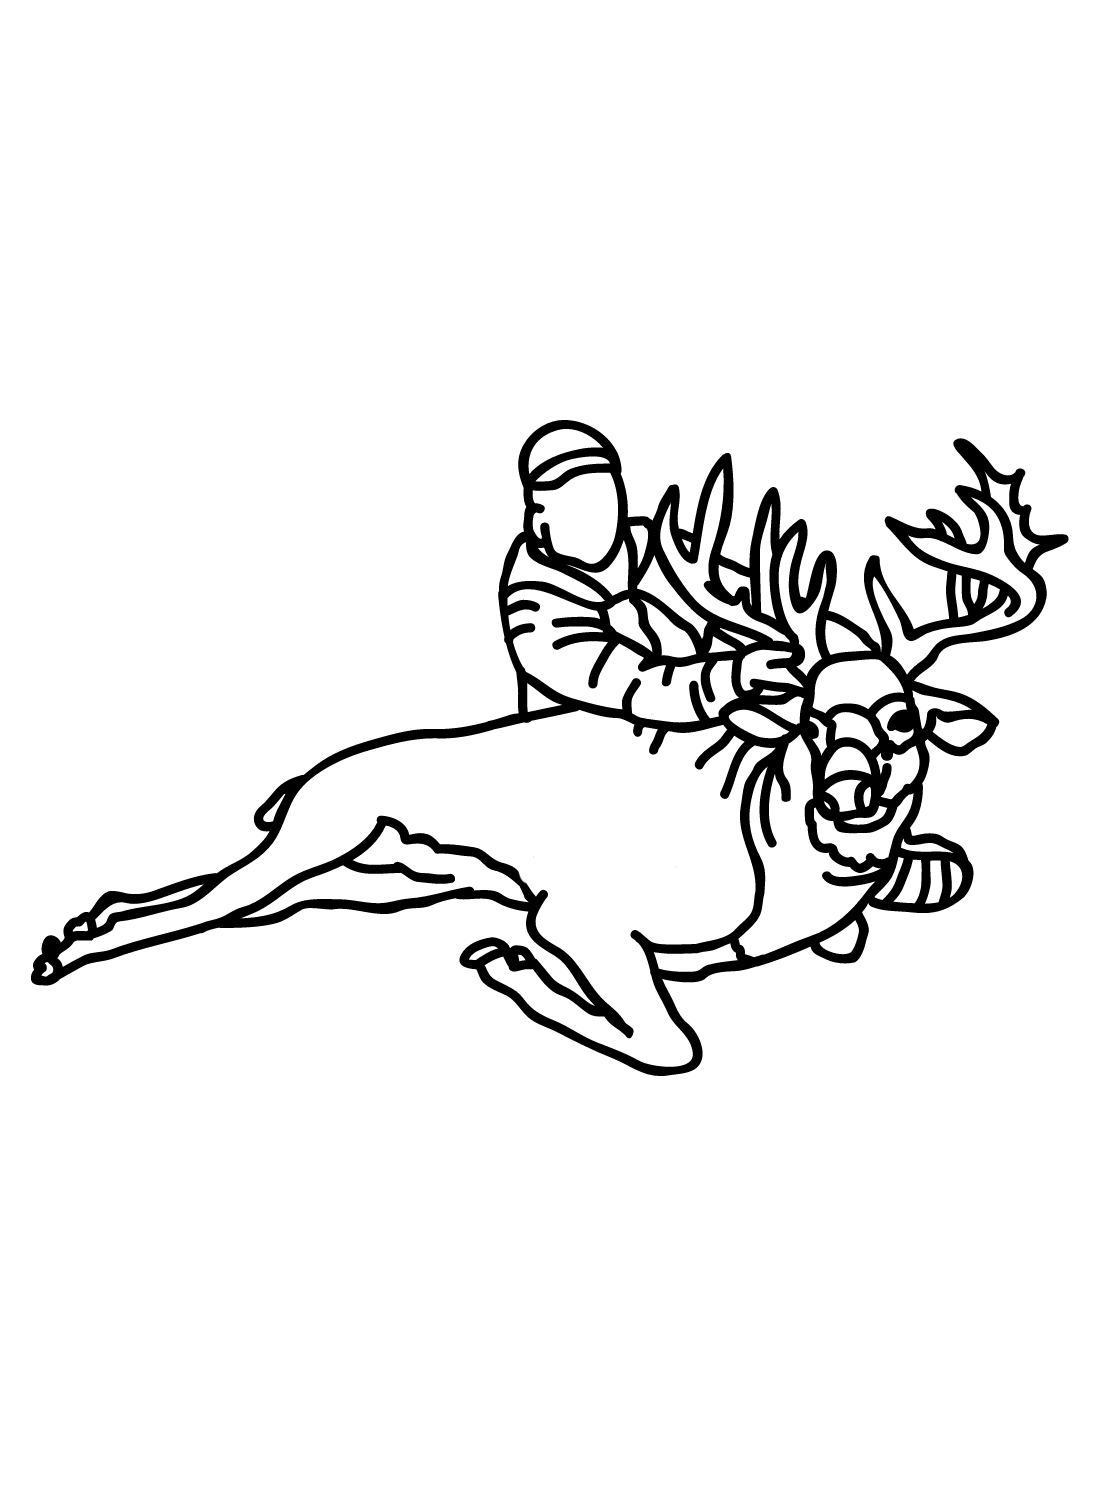 Página para colorir de imagens de veados de caça